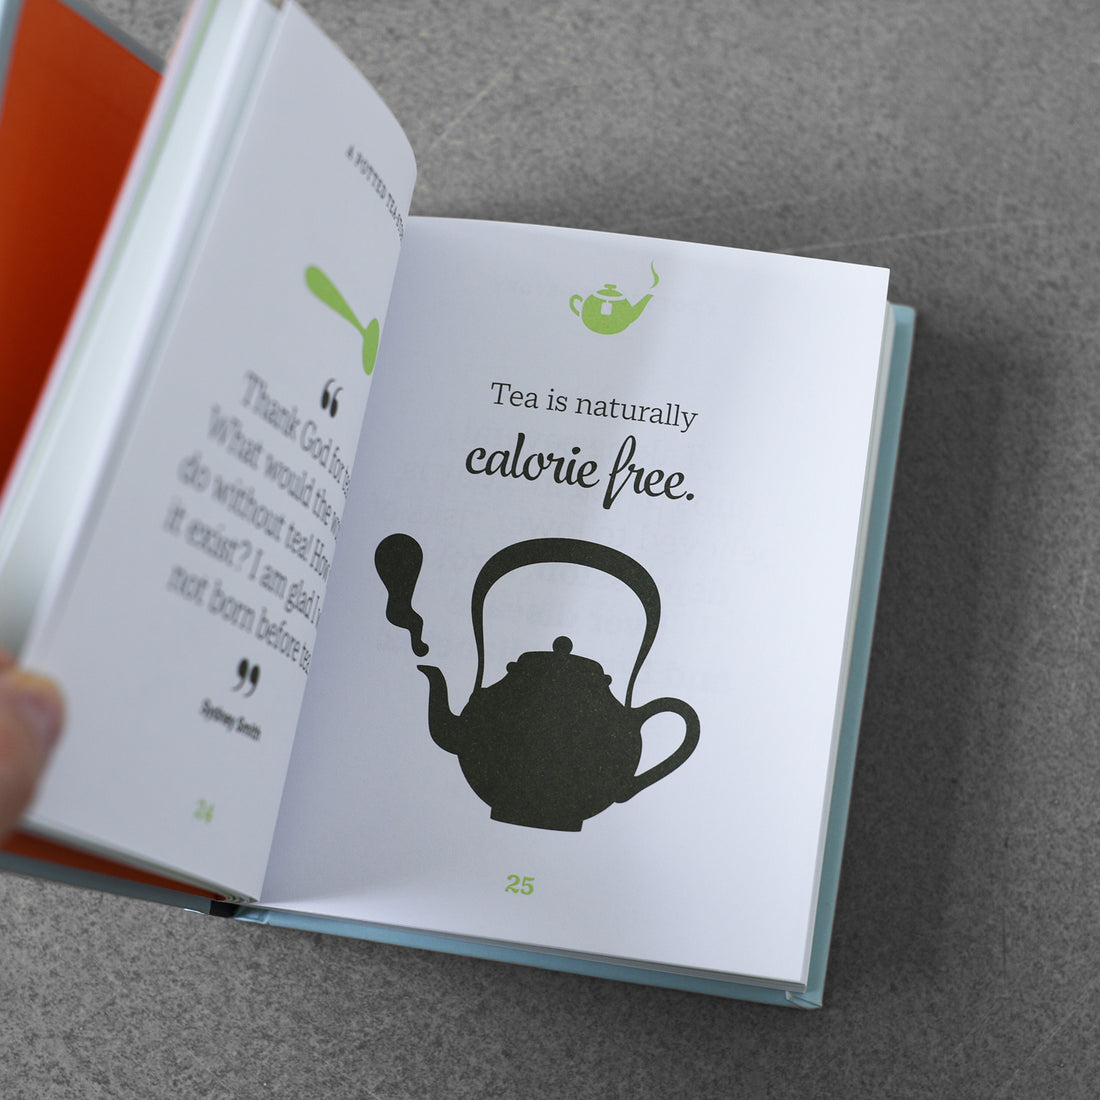 Mała książeczka o herbacie, świeżo parzone słowa dowcipu i mądrości